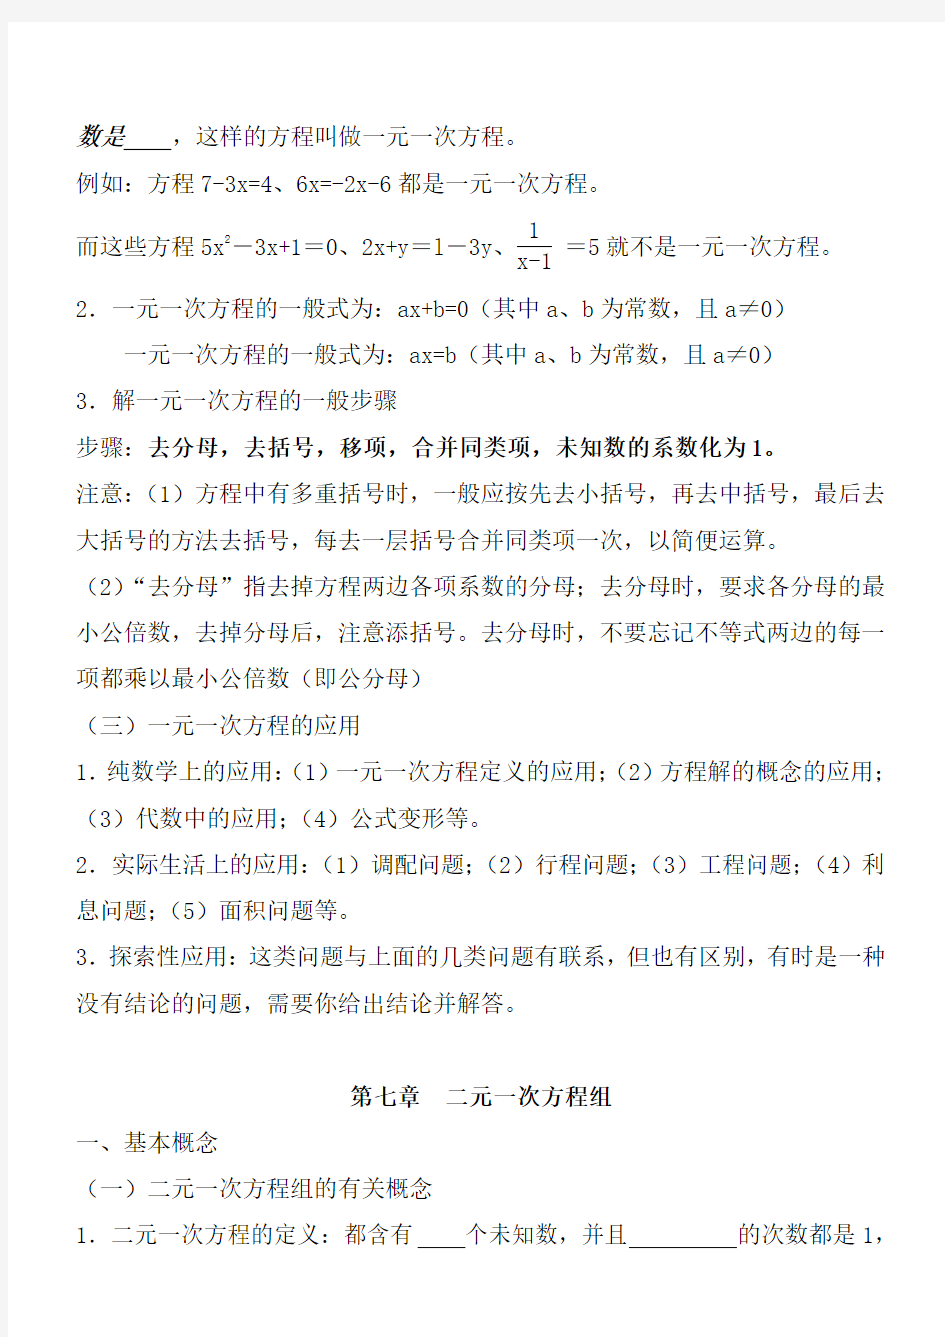 完整word版,华东师范大学出版社七年级下册数学知识点总结